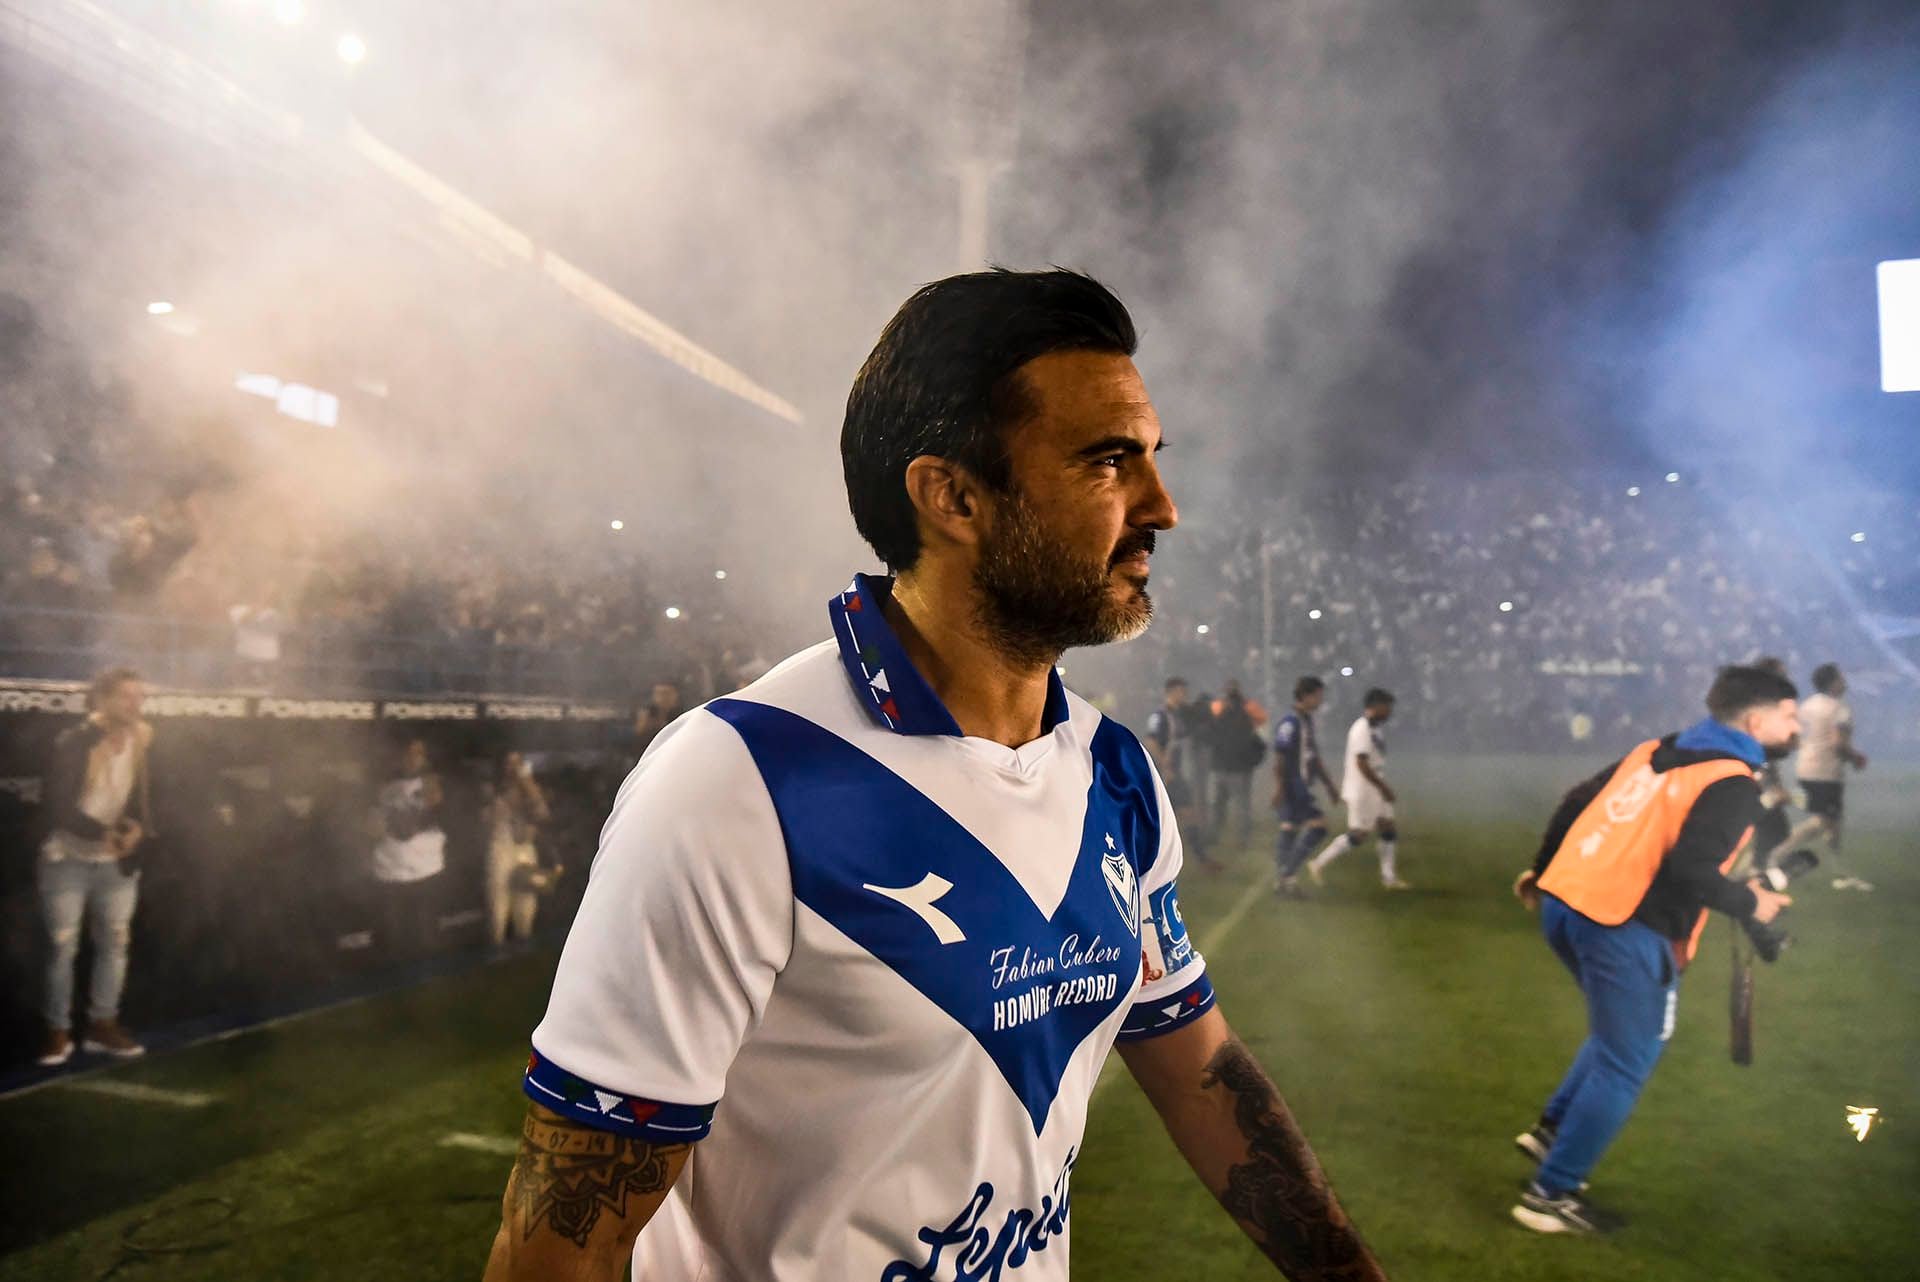 Despedida Fabian Cubero ,social y futbol